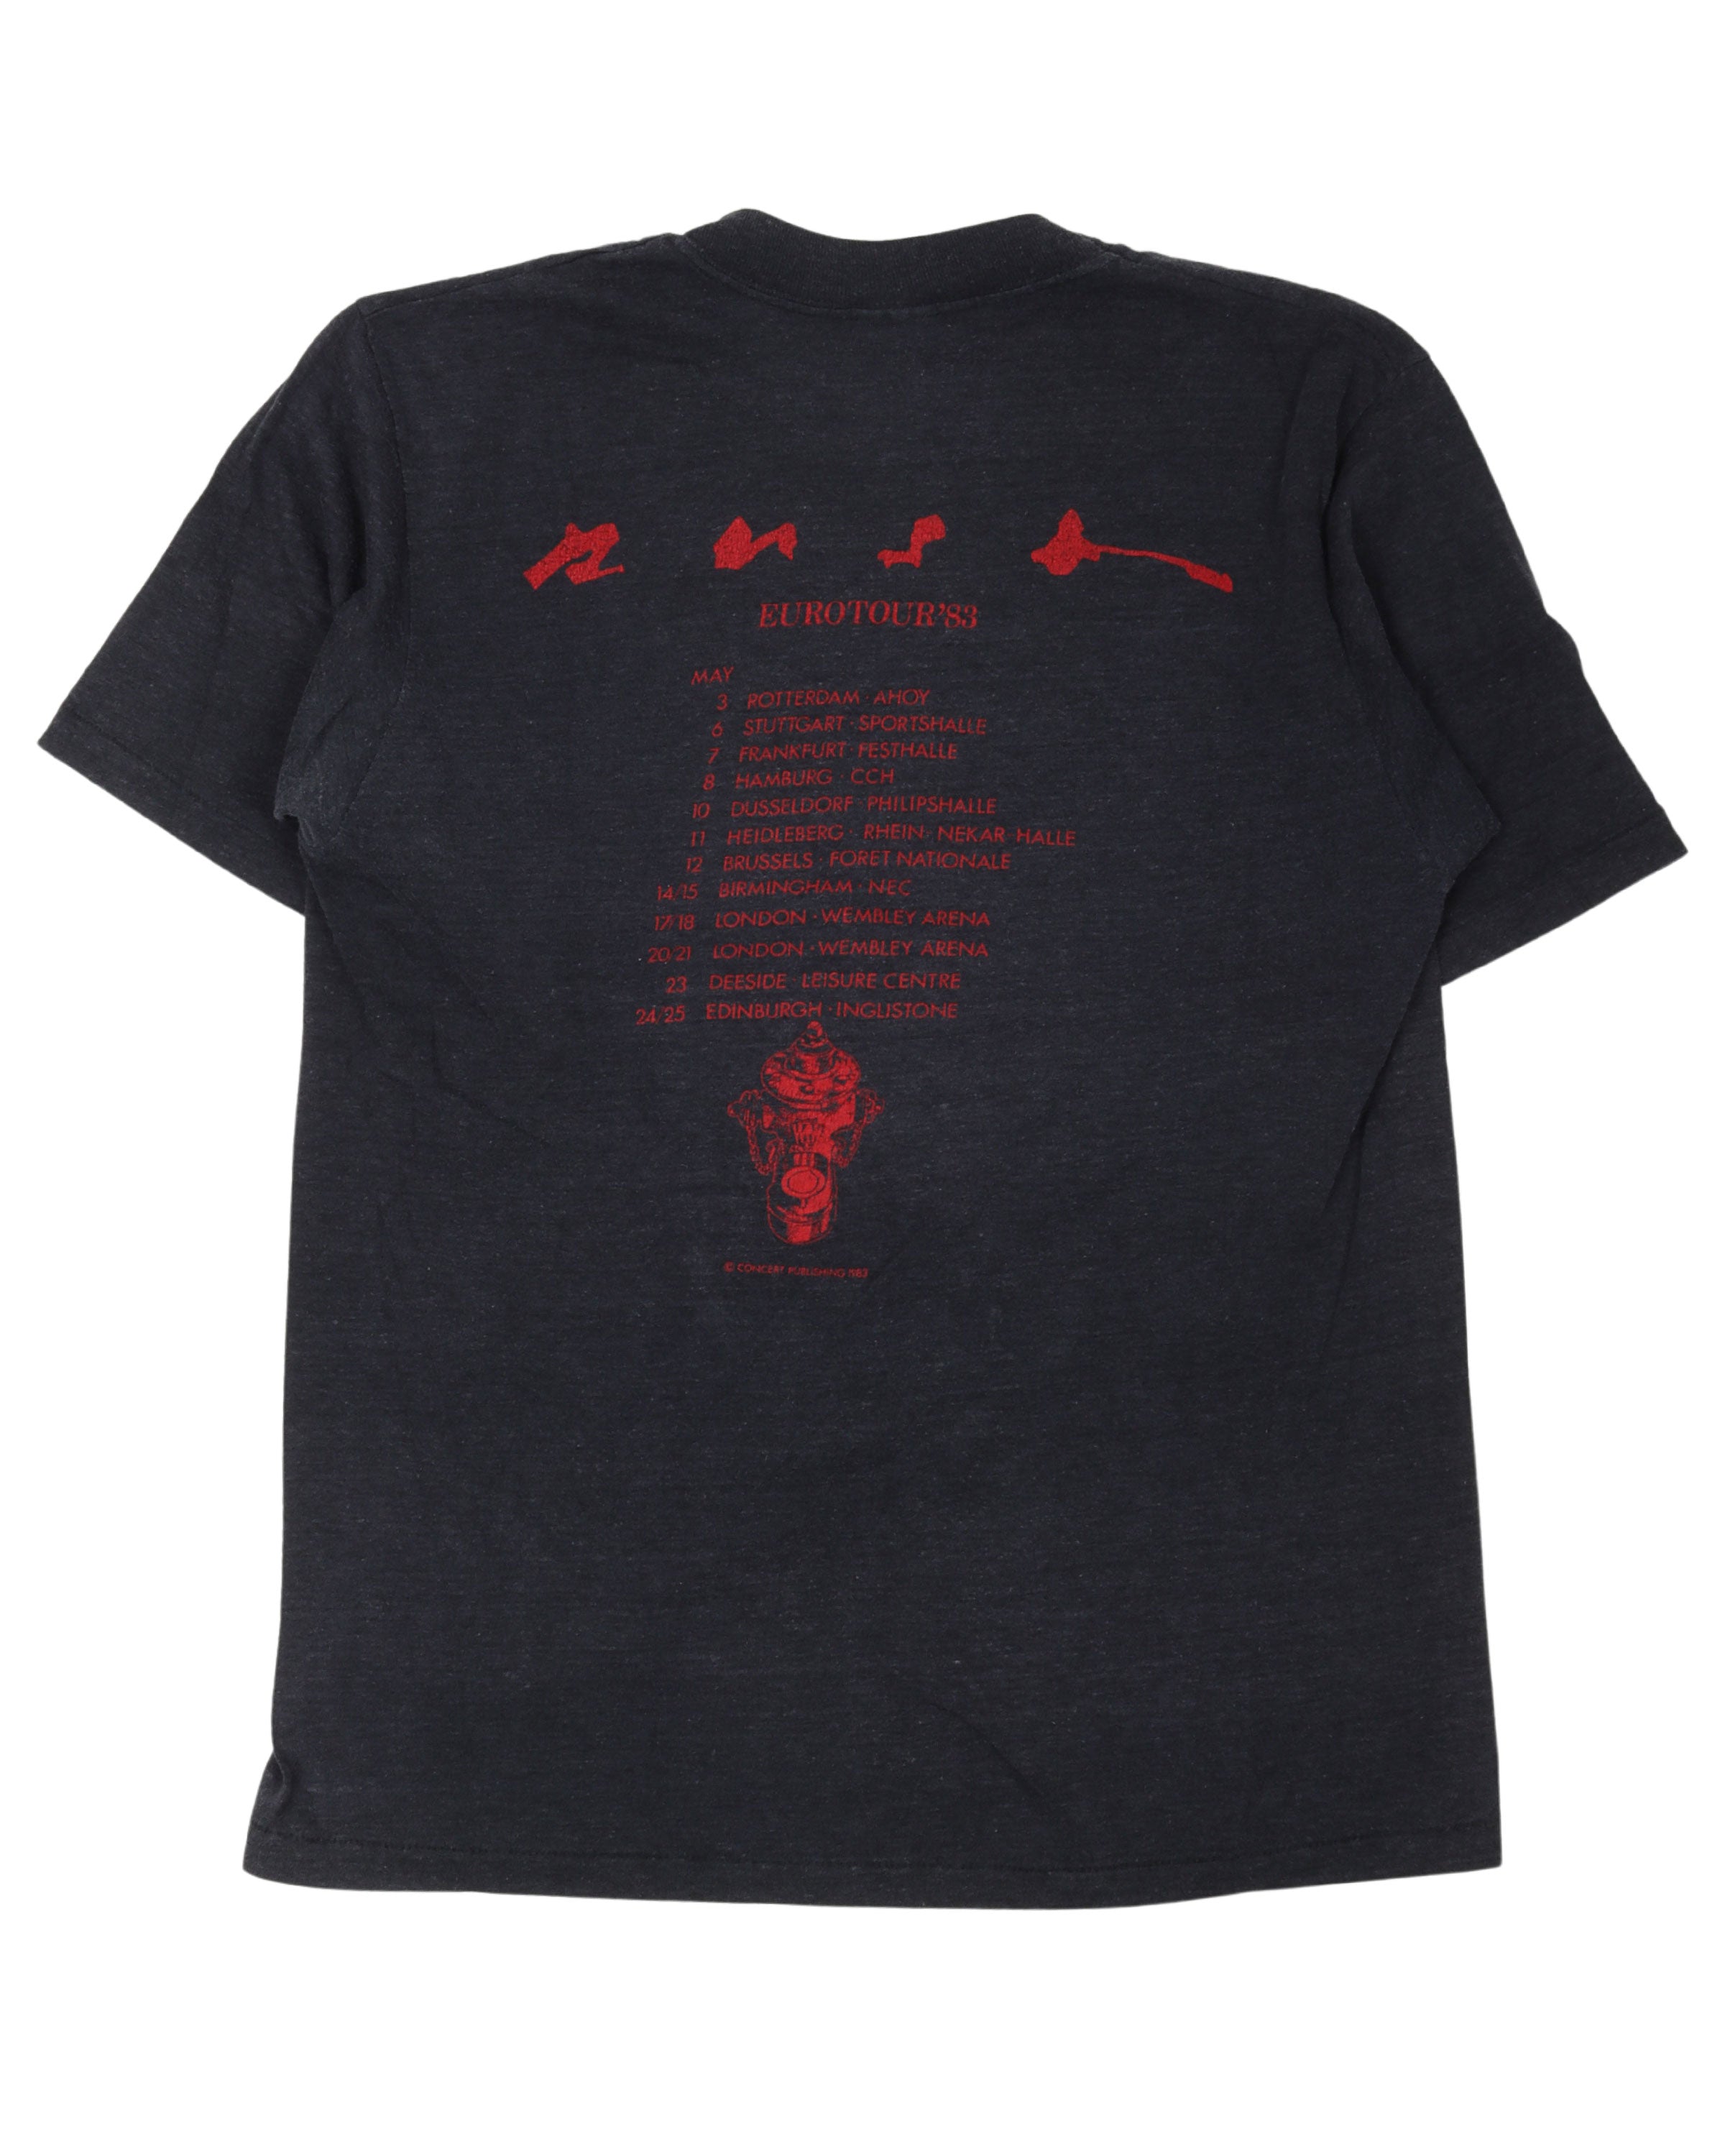 Rush Signals Eruo Tour 83' T-Shirt